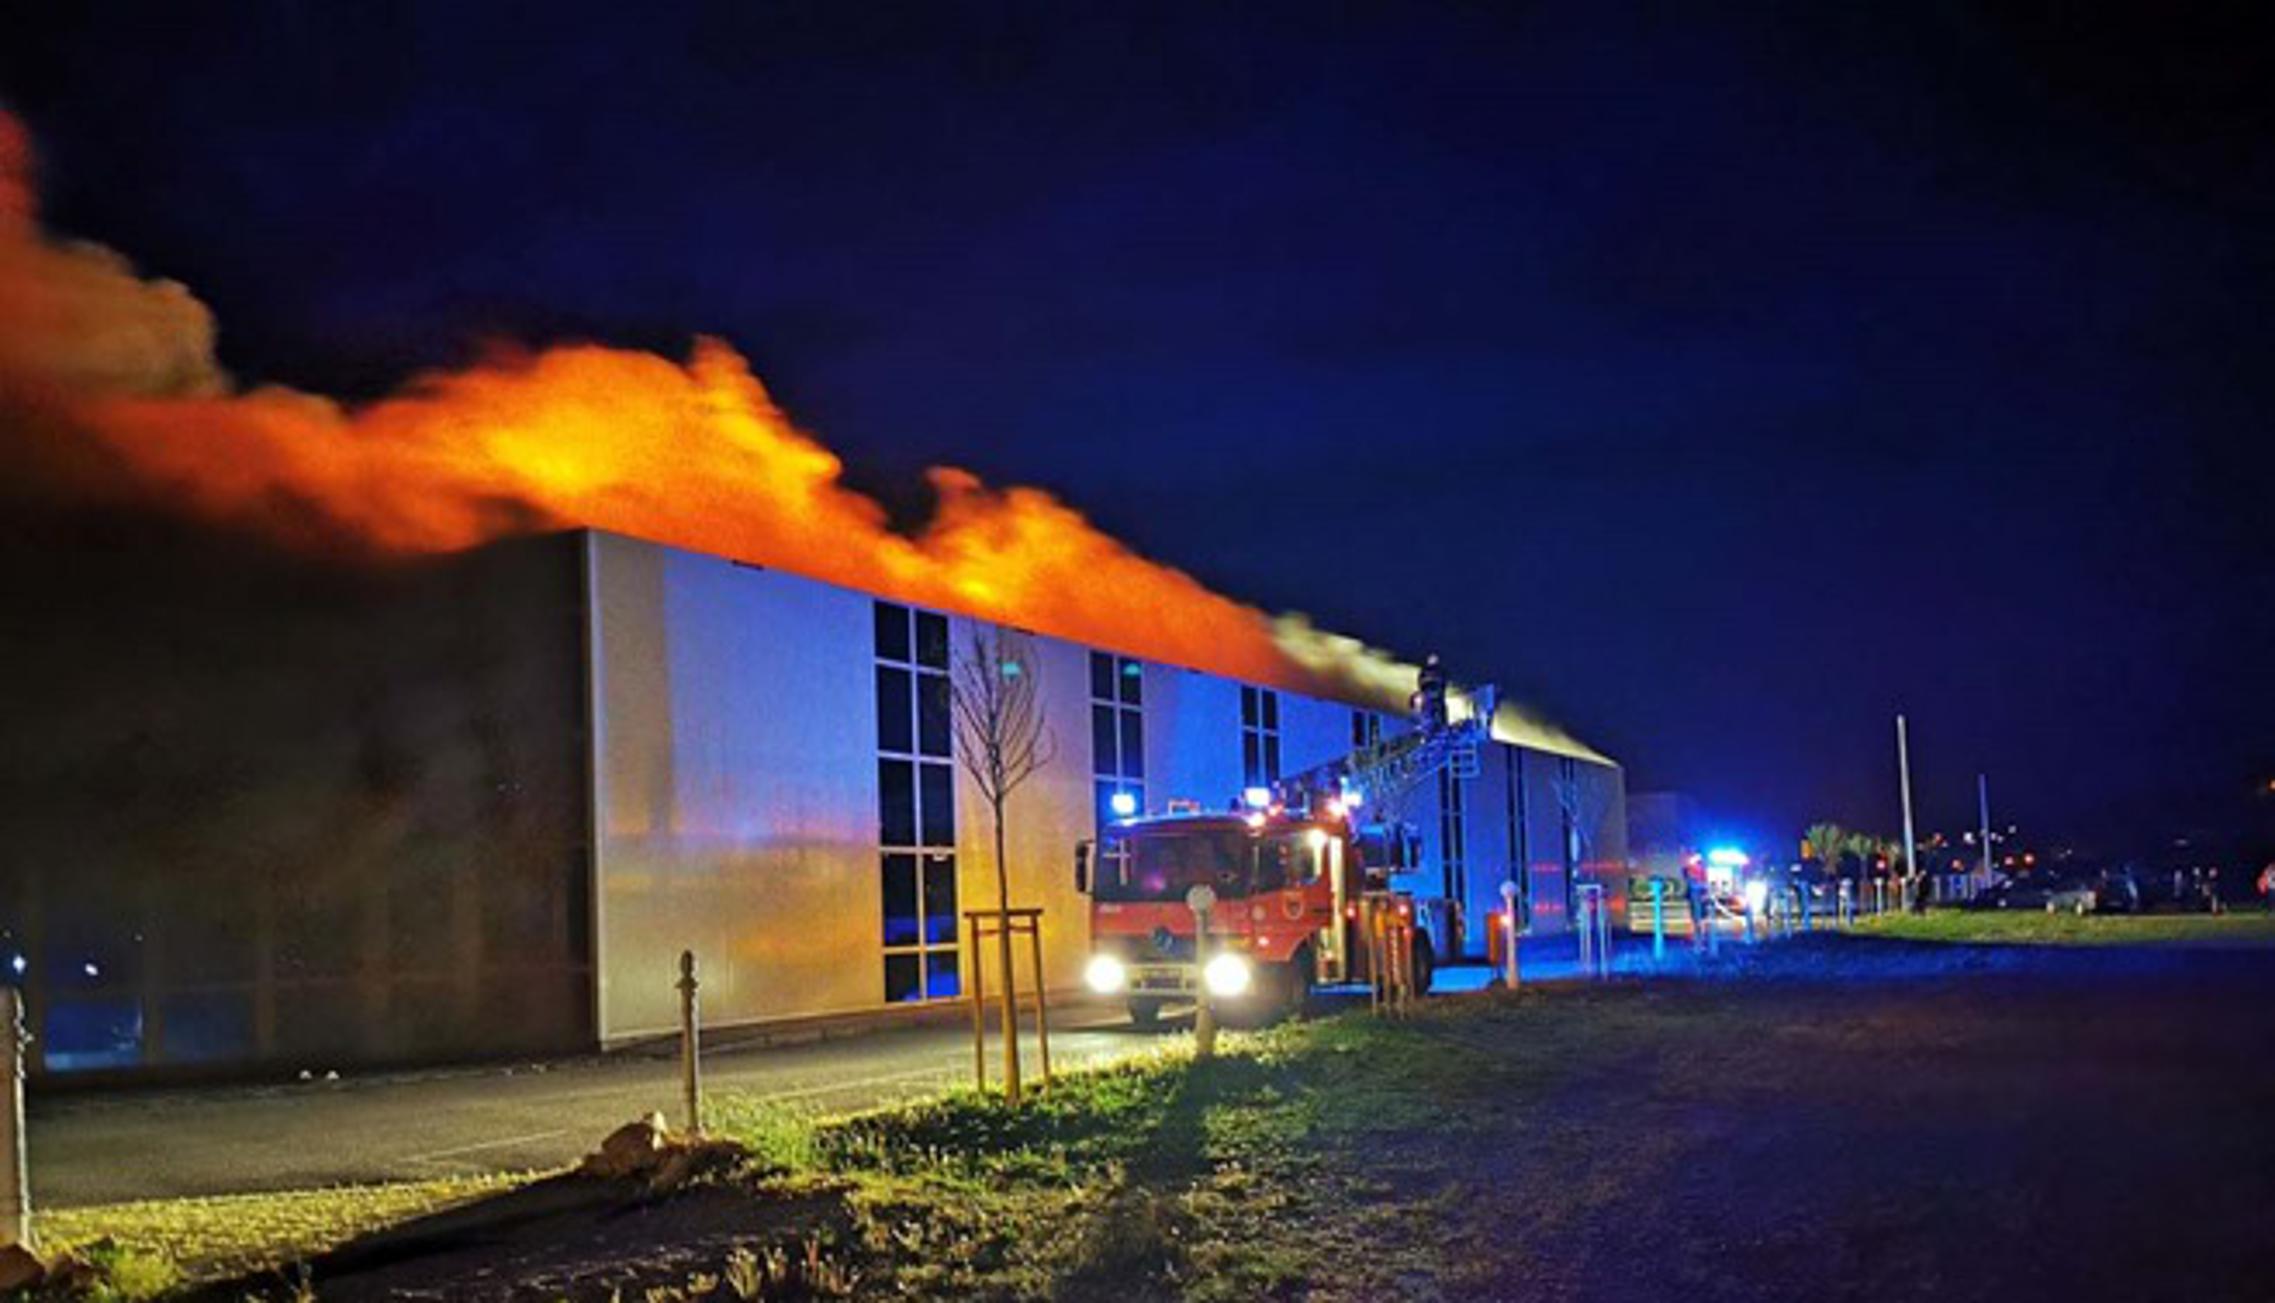 Sinoćnji požar koji je izbio u Matičević centru